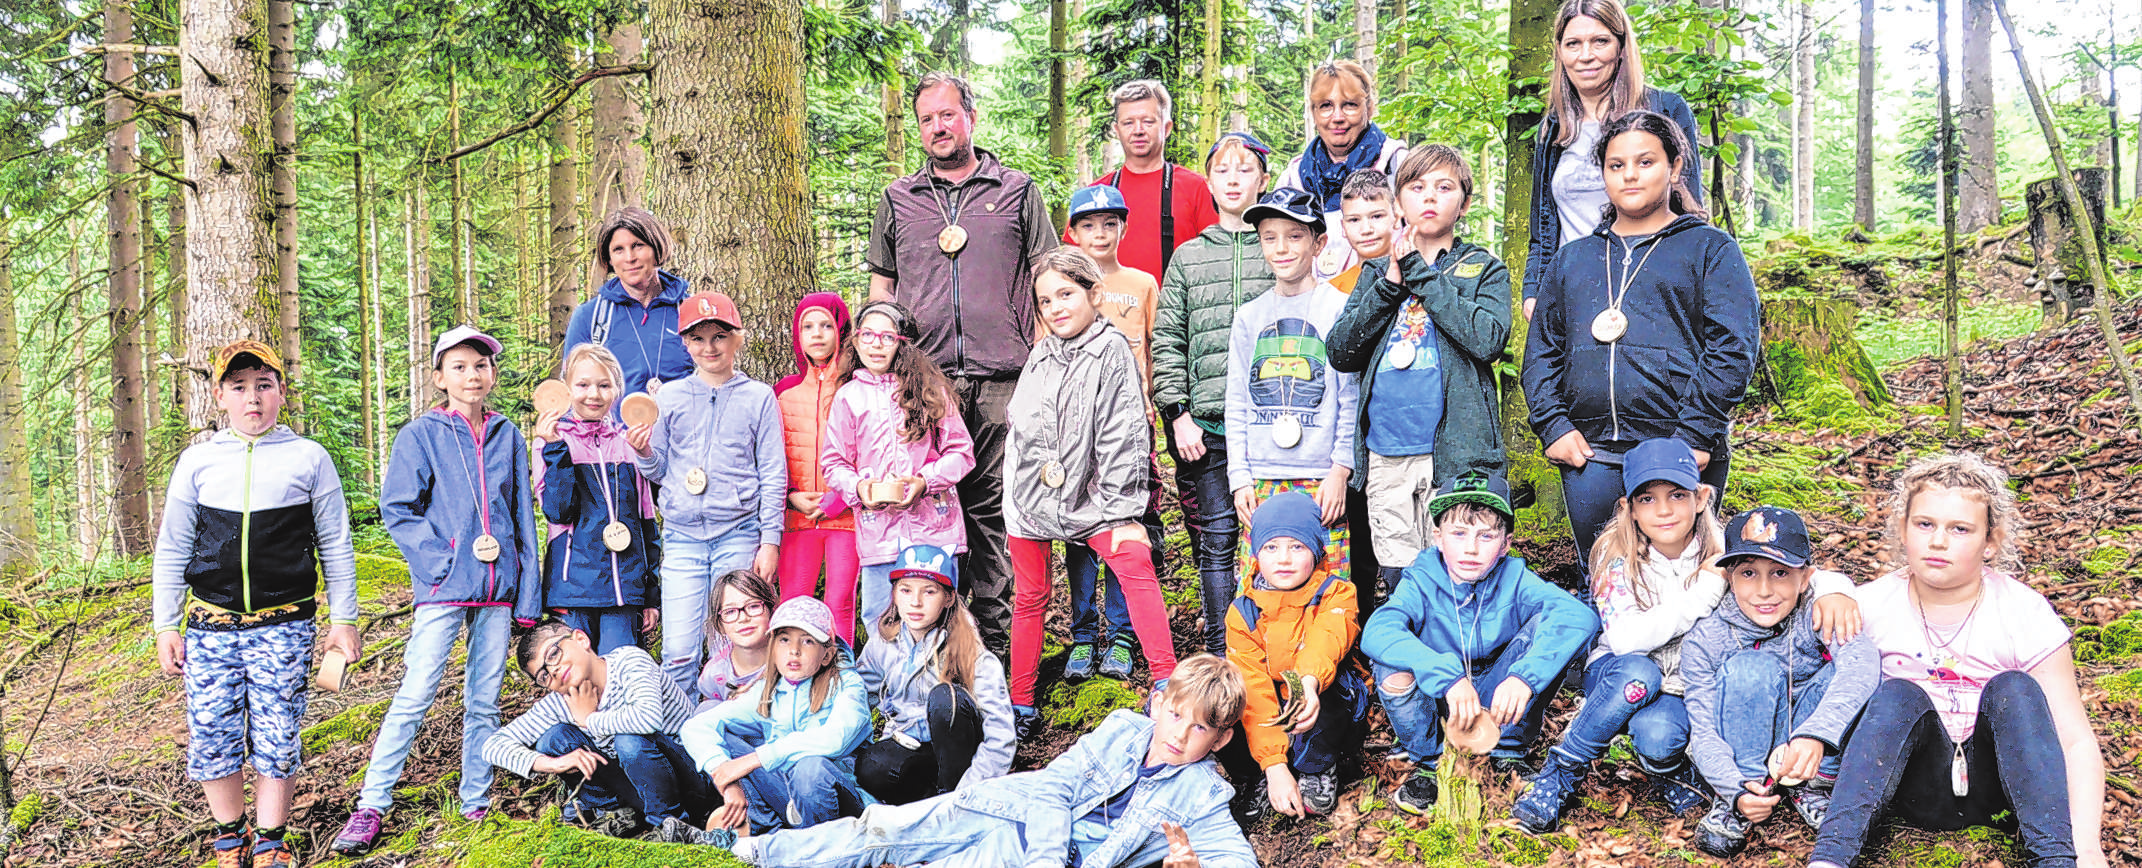 Auch einen Waldtag mit einer Schulklasse haben die ÖÖN im Innviertel organisiert - eine Klasse der Adalbert-Stifter-Schule in Ried erlebte einen spannenden Tag.